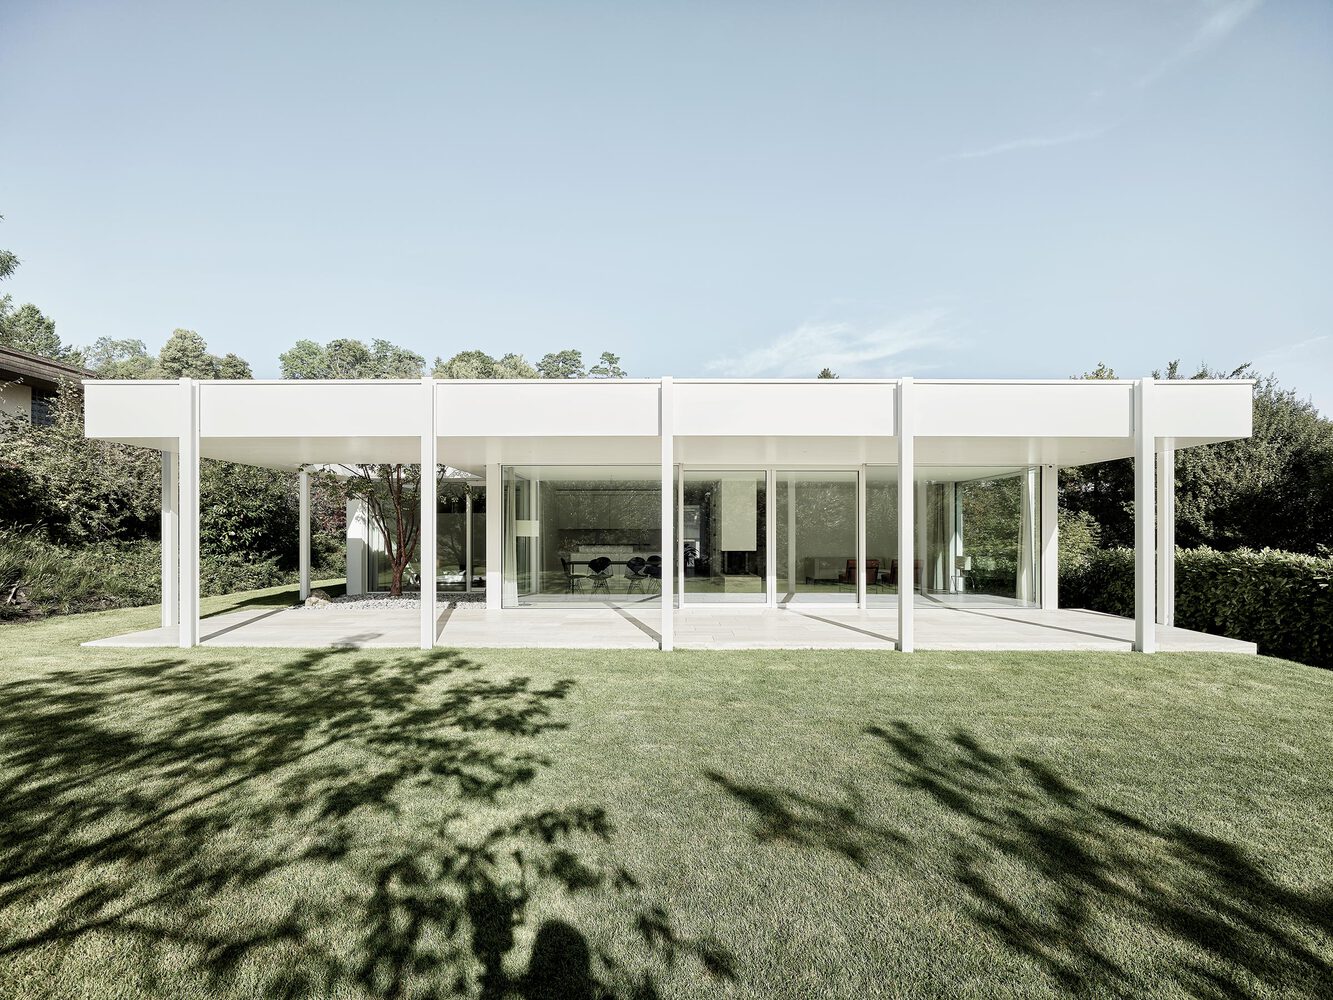 別墅設計,Urben Seyboth Architekten,別墅設計案例,別墅設計方案,別墅裝修,極簡風格別墅,瑞士,820㎡